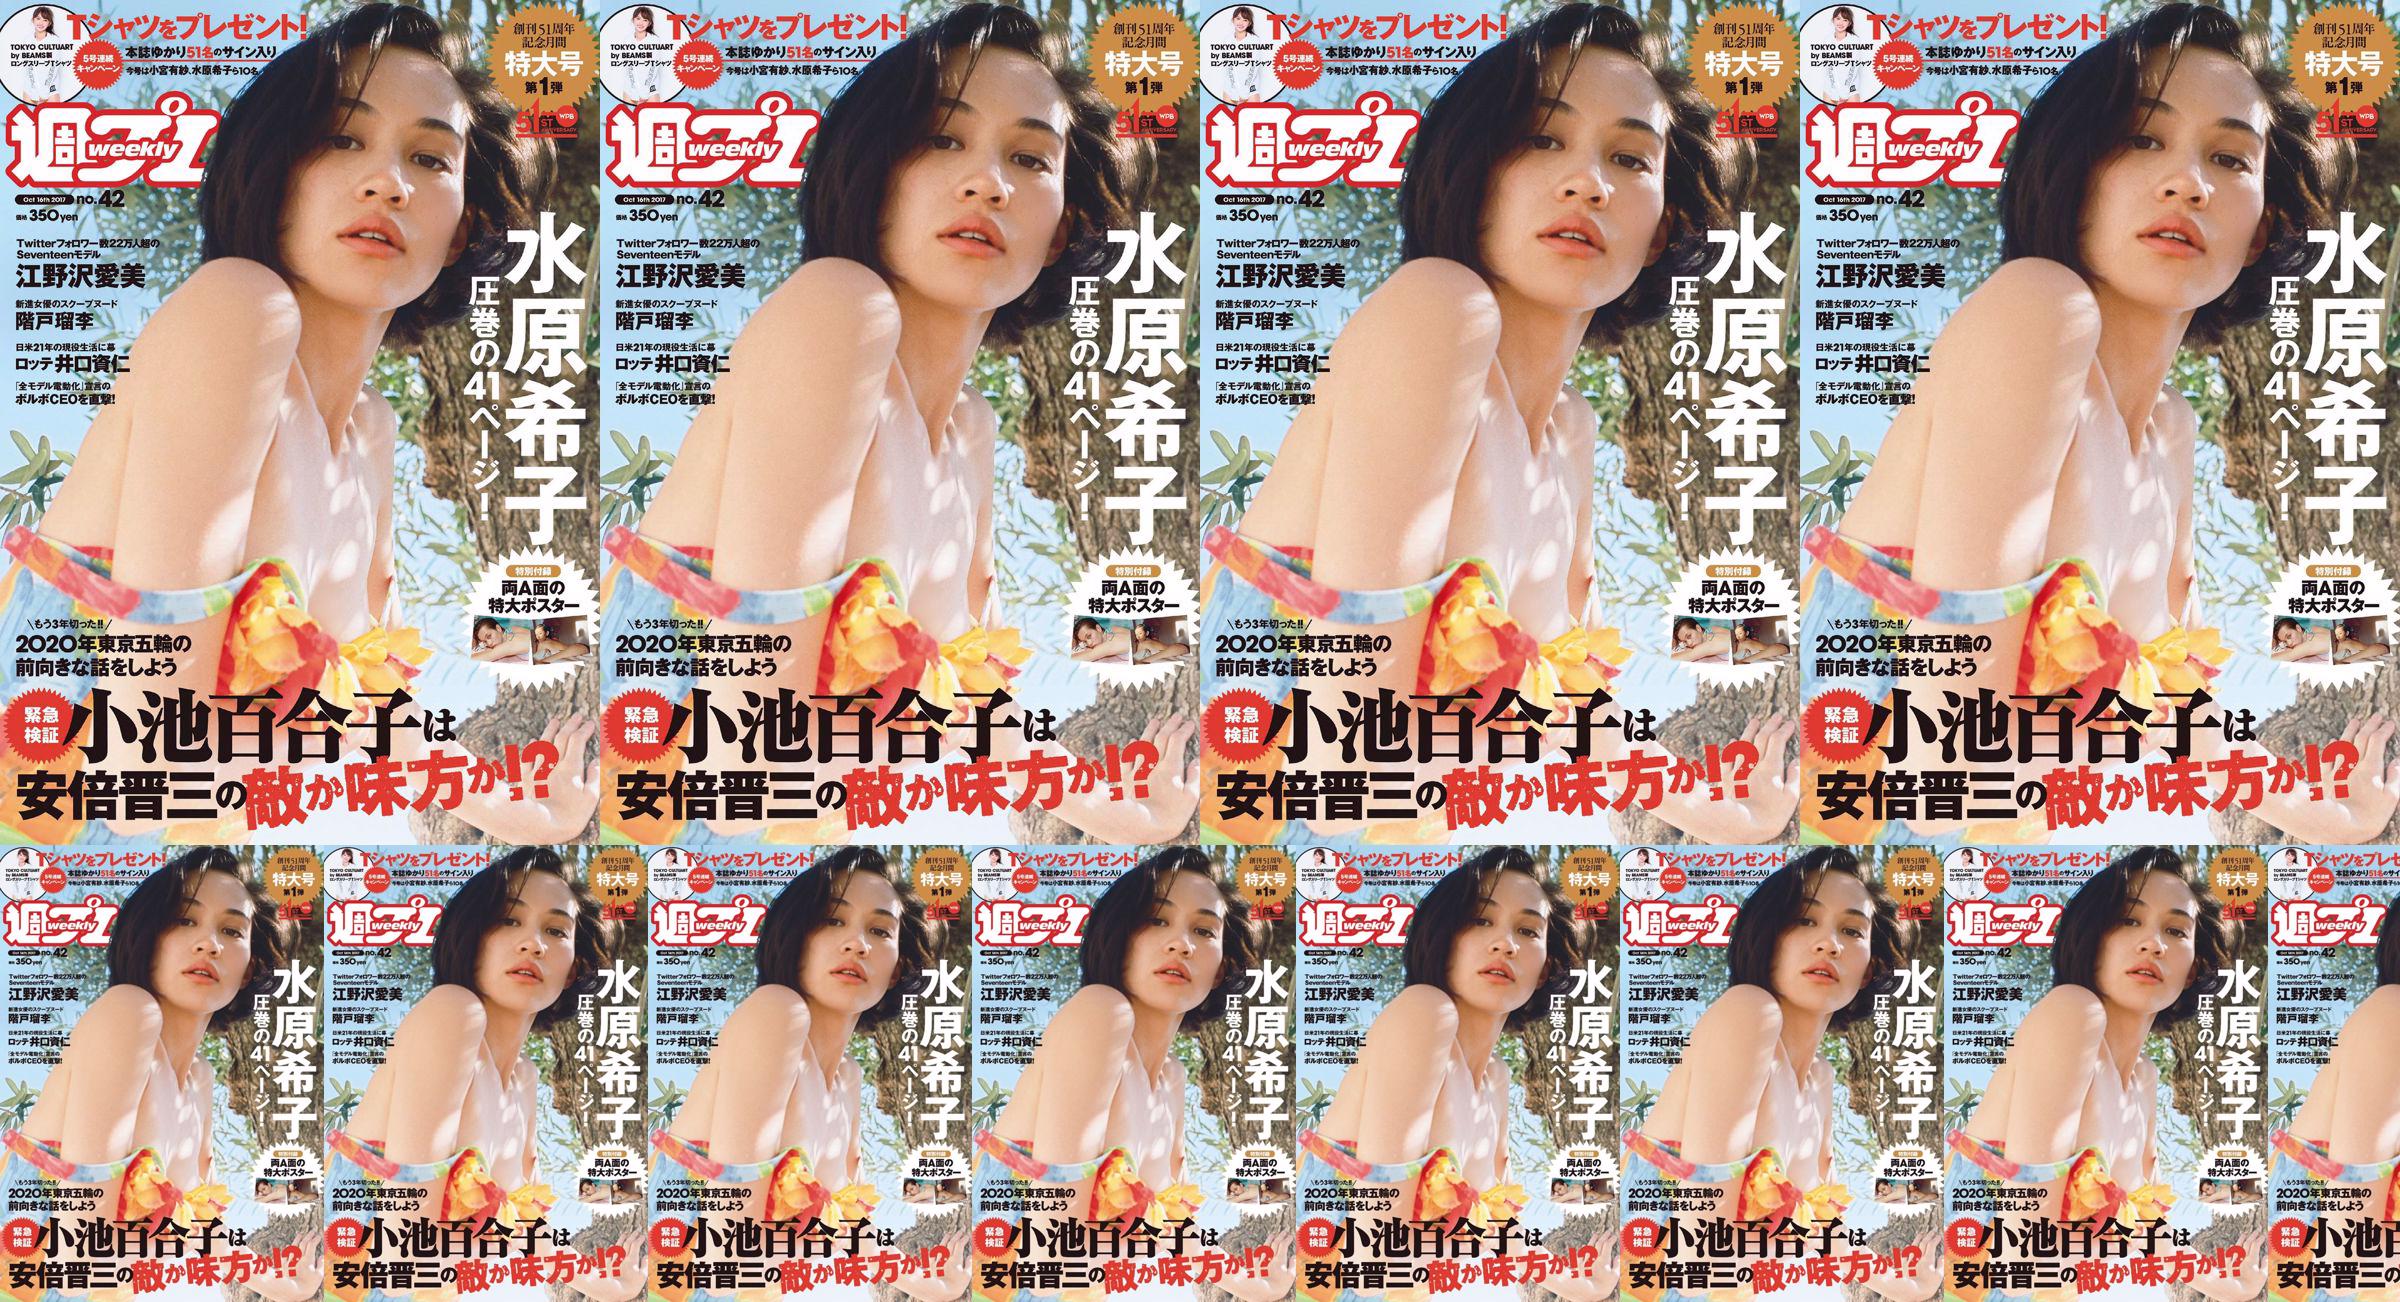 Kiko Mizuhara Manami Enosawa Serina Fukui Miu Nakamura Ruri Shinato [Playboy semanal] 2017 No.42 Photo Magazine No.73d6d0 Página 1